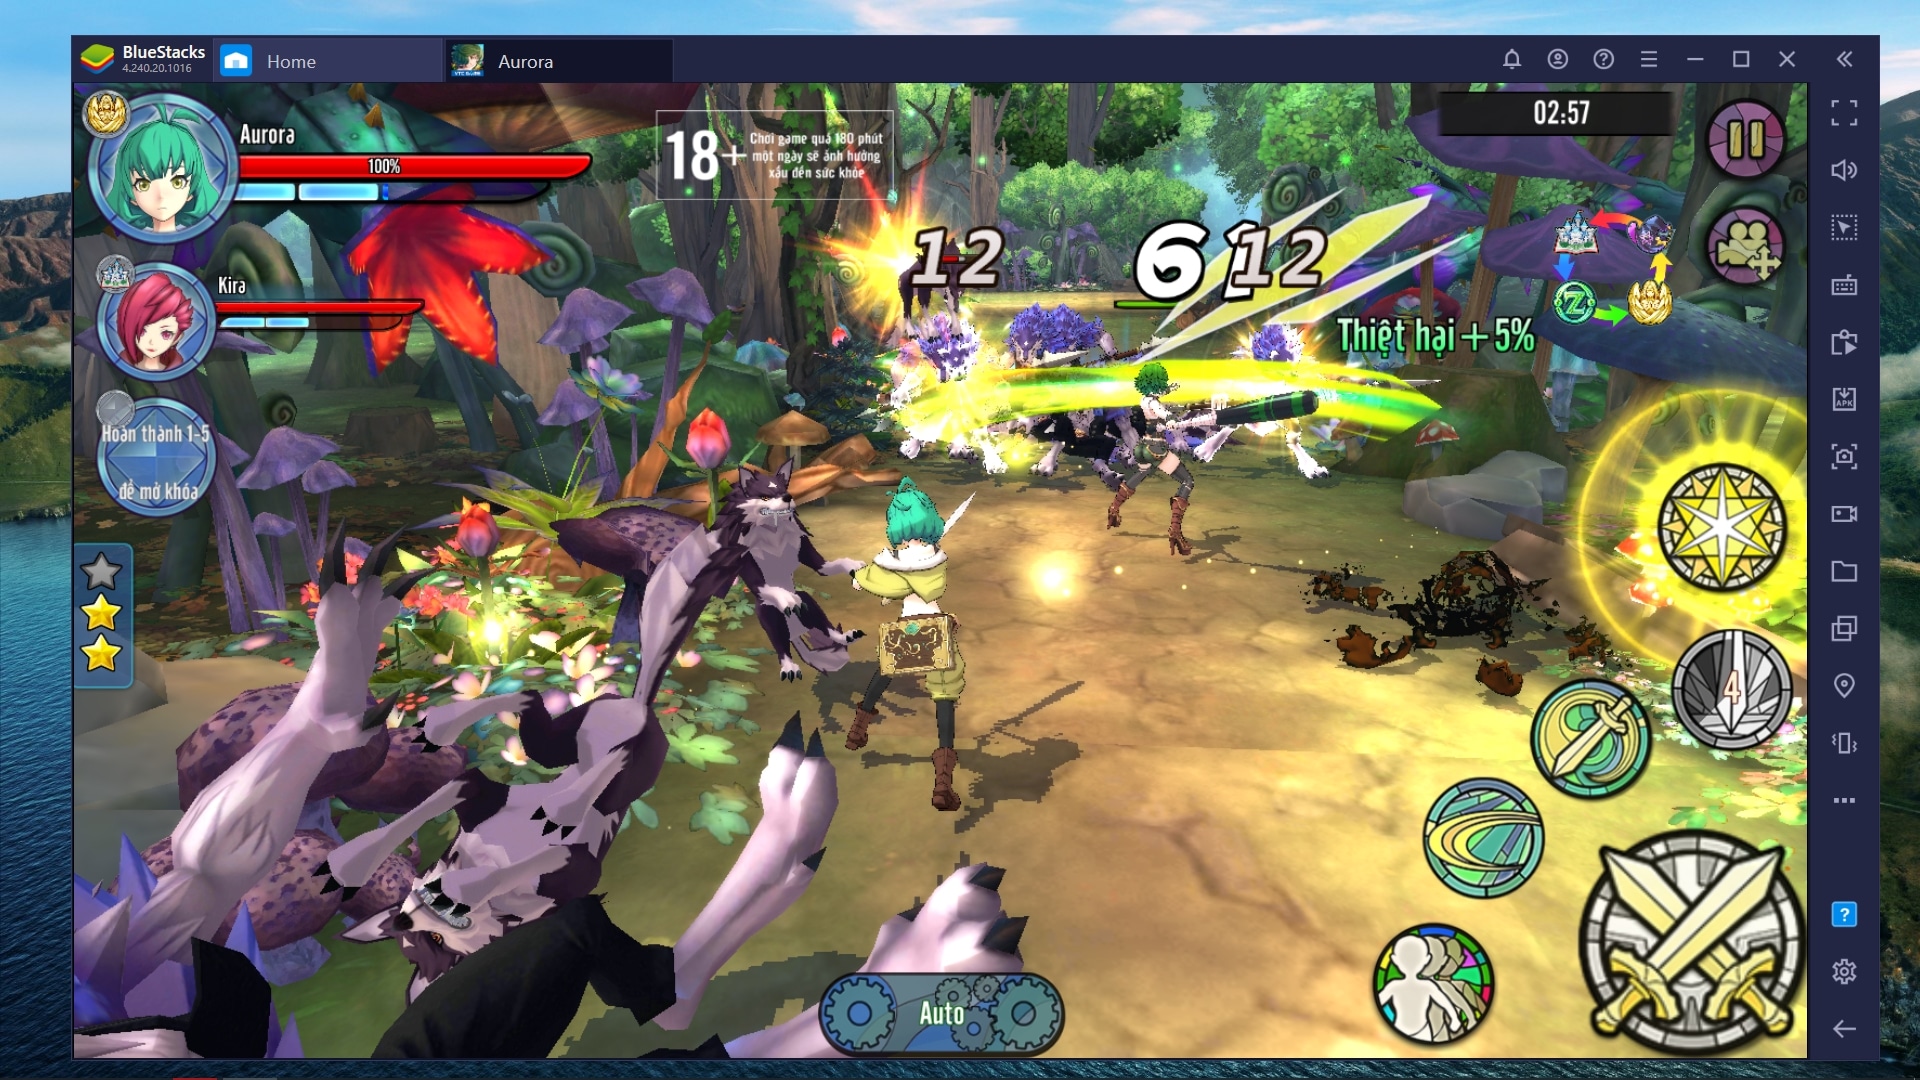 Aurora – Vùng Đất Huyền Thoại, tựa game mobile RPG chặt chém cực đã khi chơi trên phần mềm BlueStacks